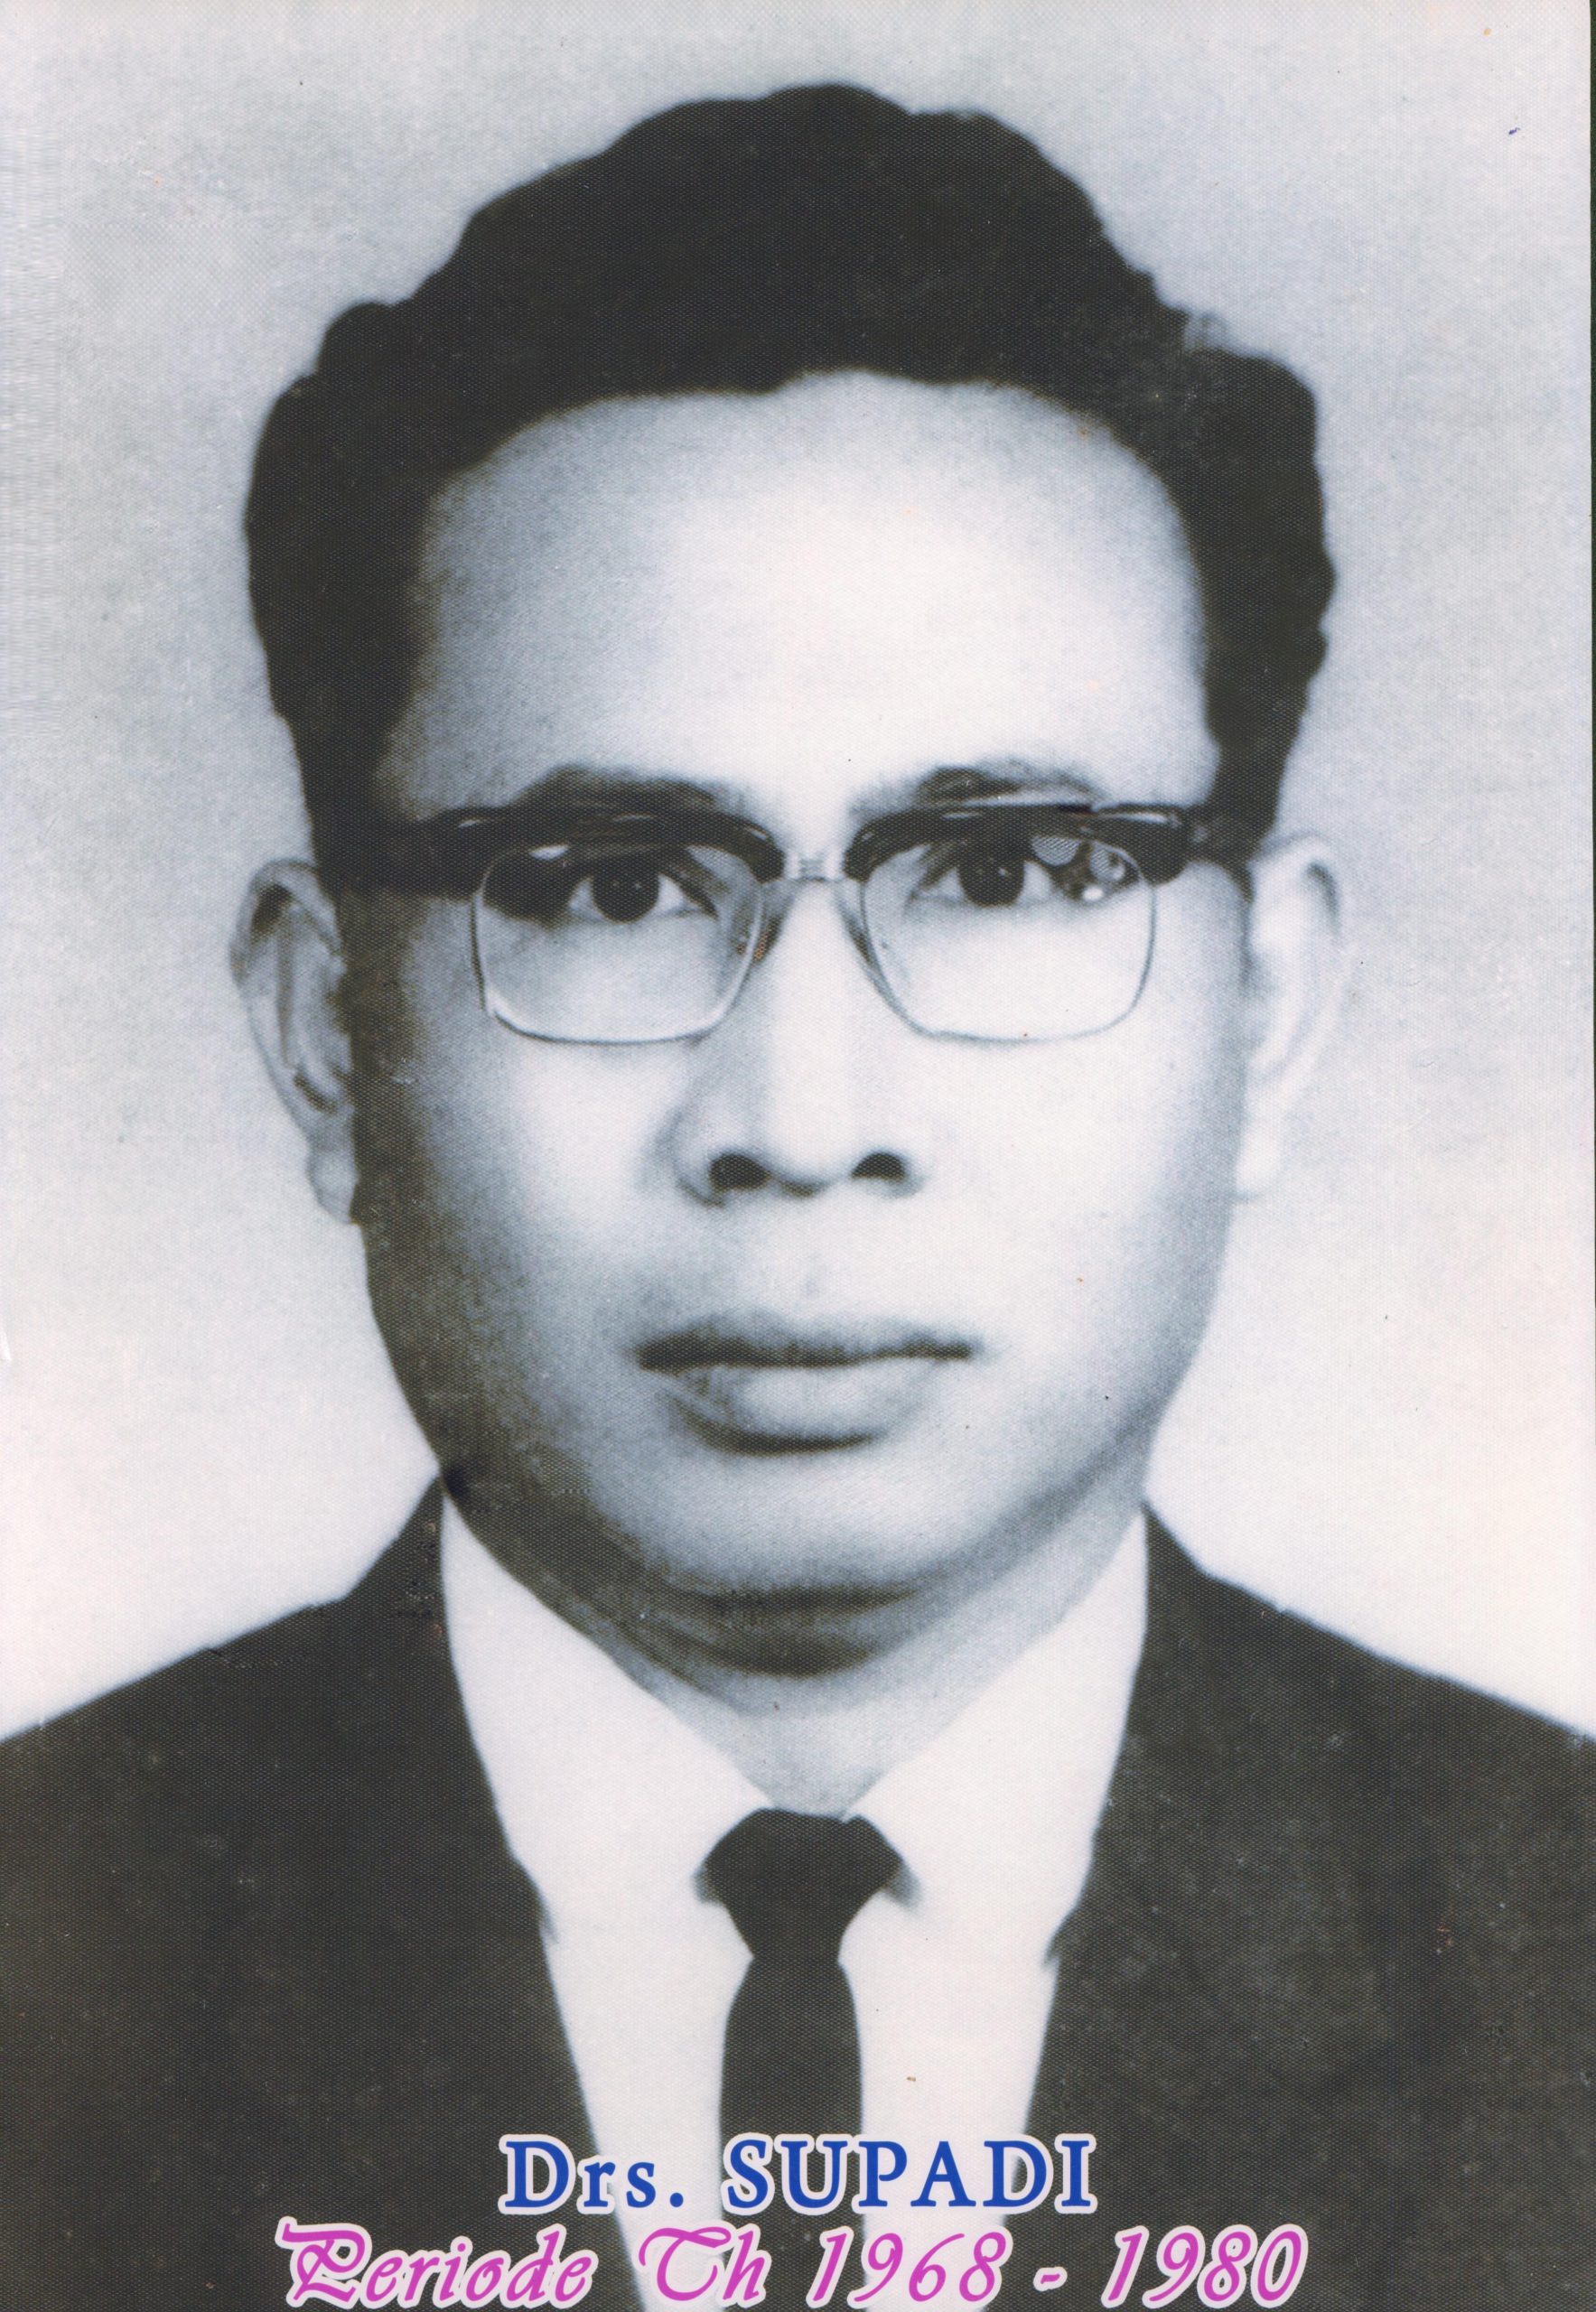 Tahun 1968 - 1980 Drs. Supadi